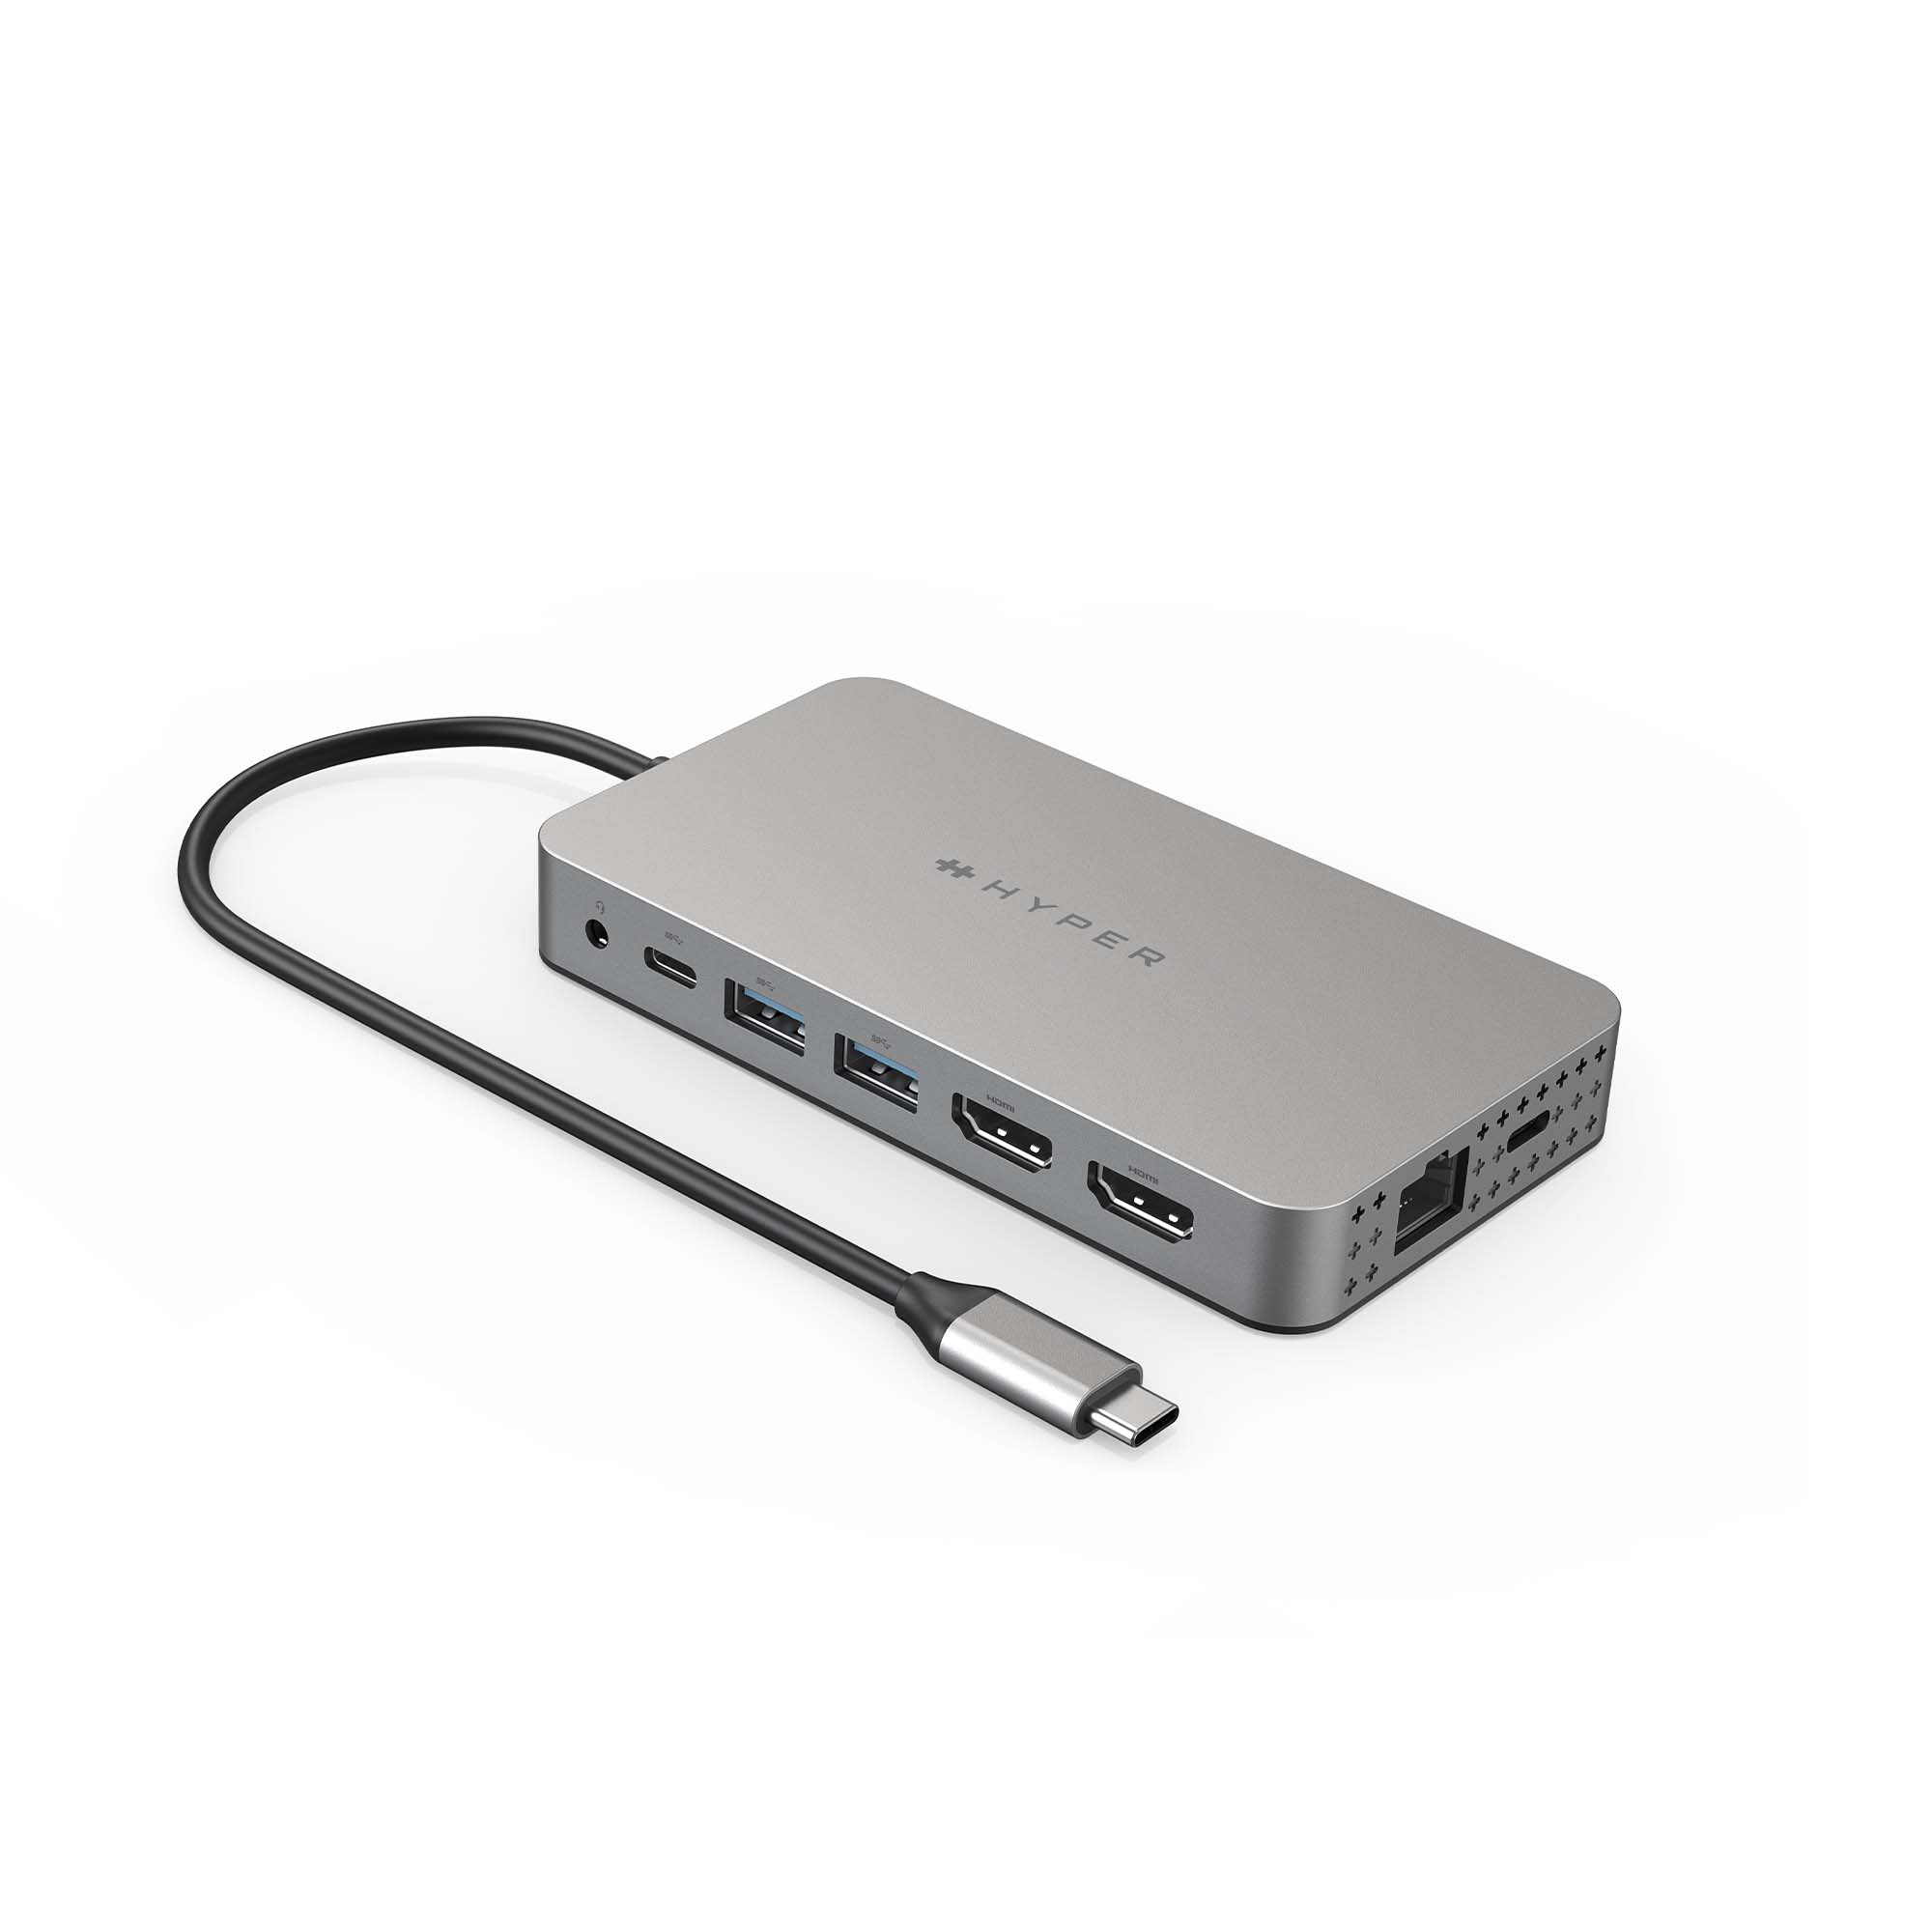 CỔNG CHUYỂN HYPER DUAL 4K HDMI 10 in1 ( ra 2 MÀN HÌNH) USB-C HUB FOR MACBOOK M1 HDM1H- Hàng chính hãng